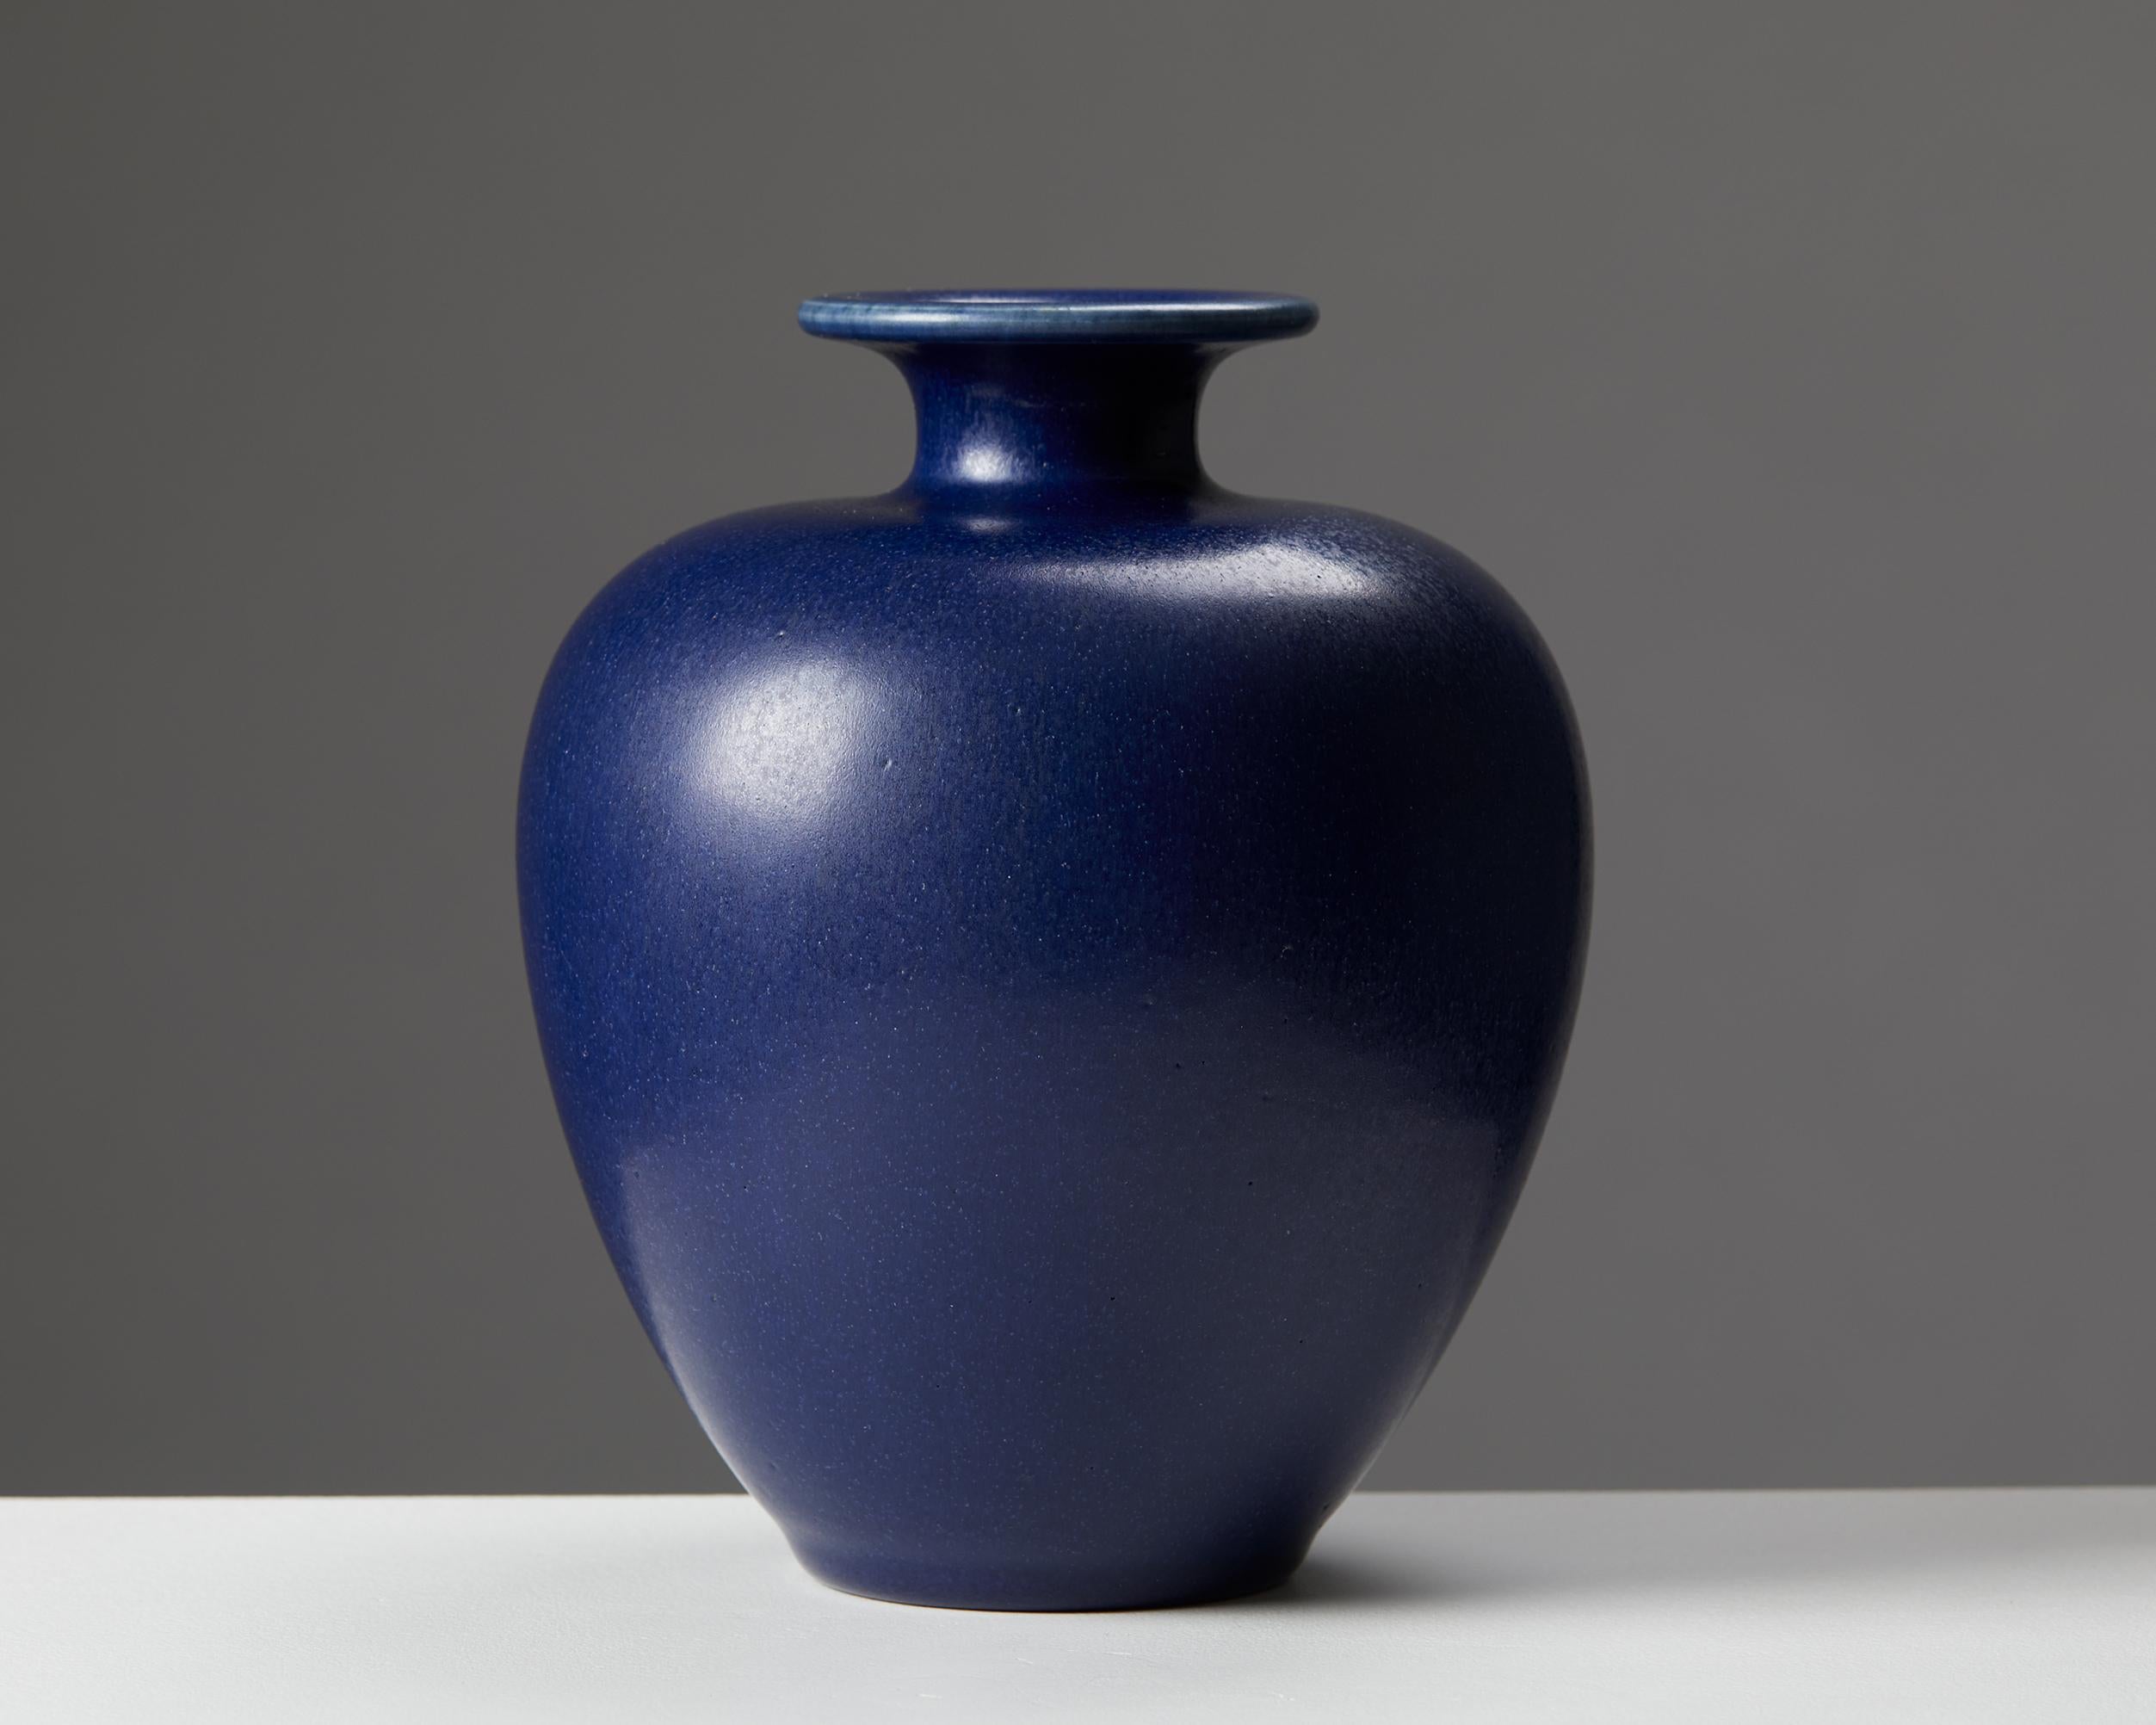 Vase by Erich & Ingrid Triller,
Sweden, 1950s.

Signed.

Stoneware.

Dimensions:
H: 17.5 cm / 7”
Diameter: 14 cm / 5 1/2